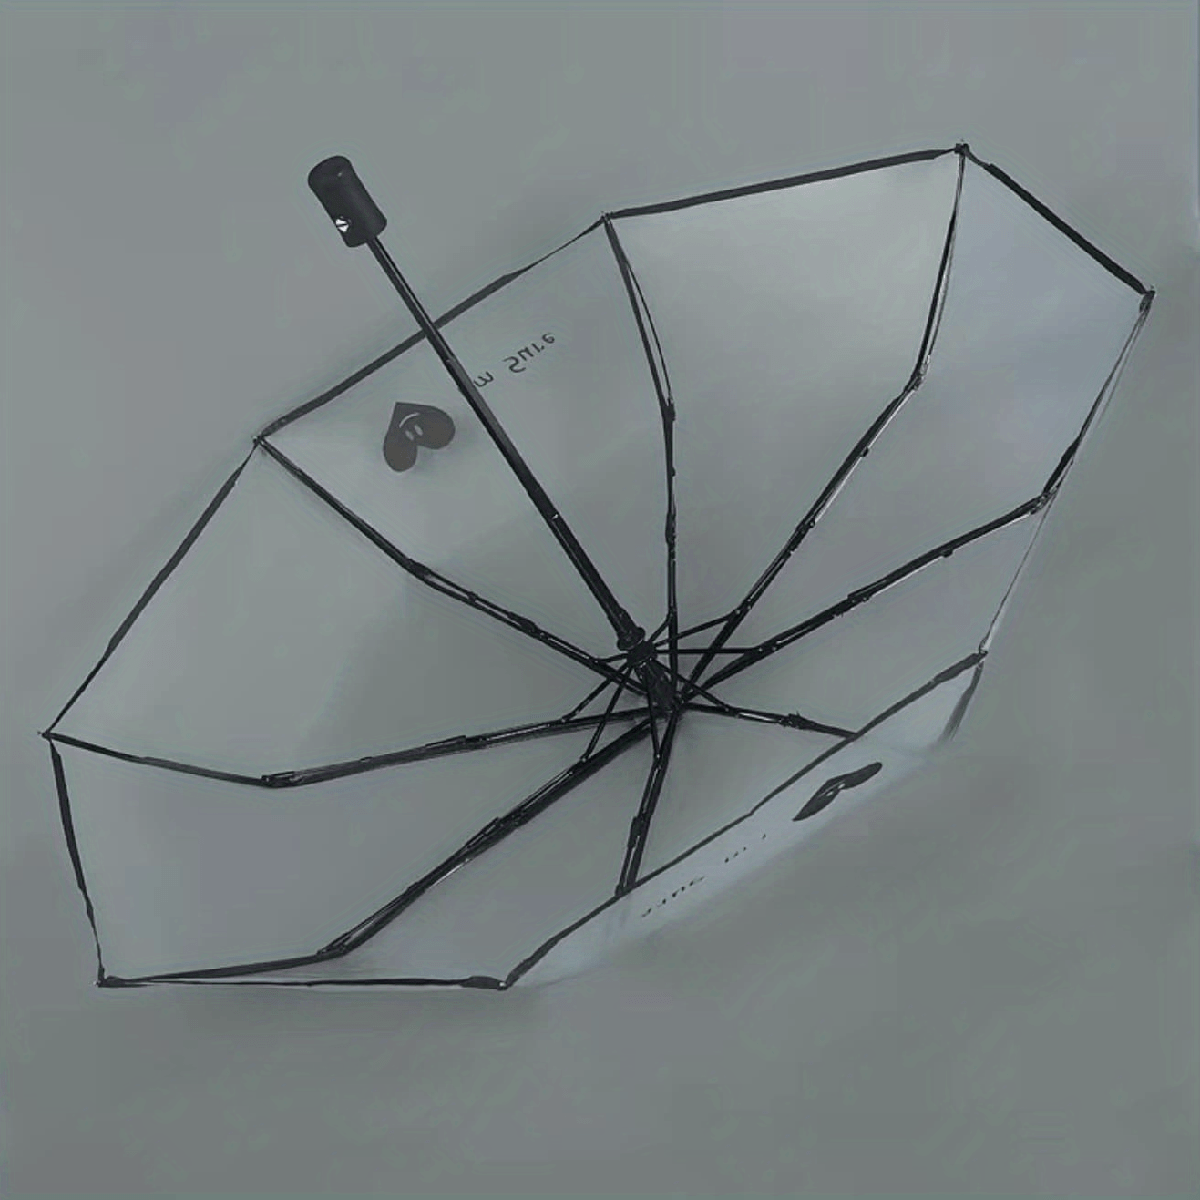 Koreanischer Transparenter Regenschirm für Damen - Faltbar, Automatisch, Sonnenschutz